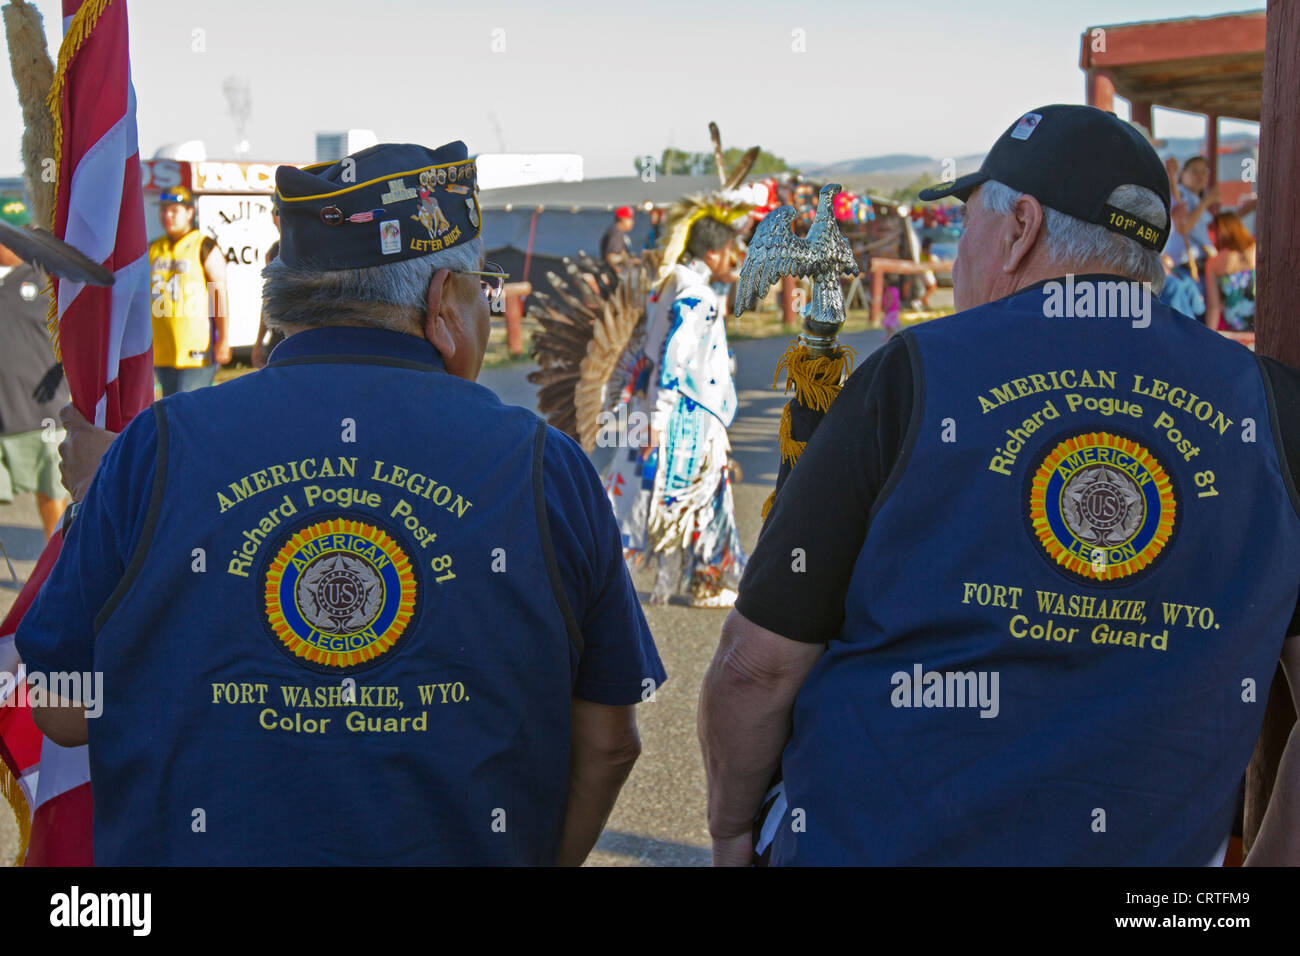 Fort Washakie, Wyoming - Les membres de la section locale de la Légion américaine attend le début d'une parade. Banque D'Images